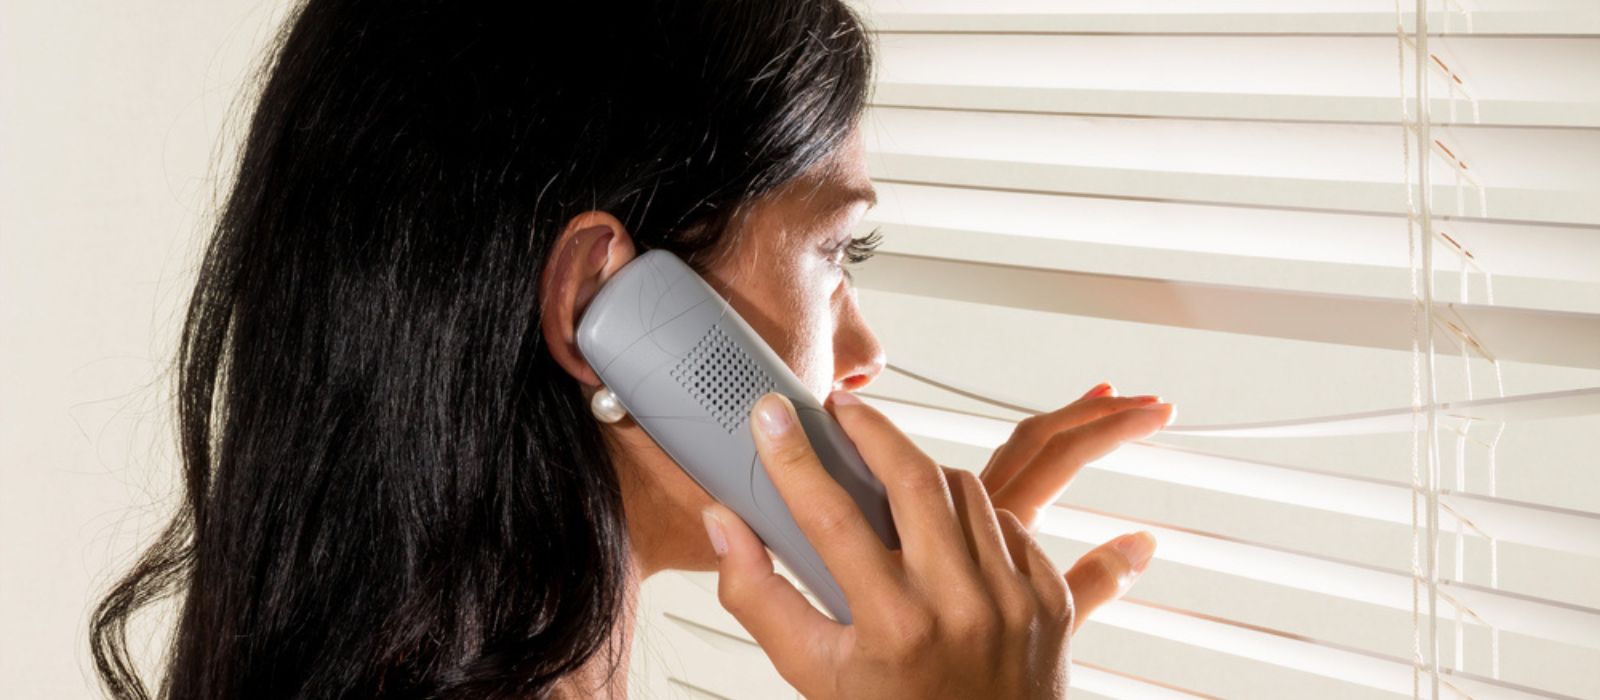 Une voisine inquiète regarde par sa fenêtre tout en téléphonant.